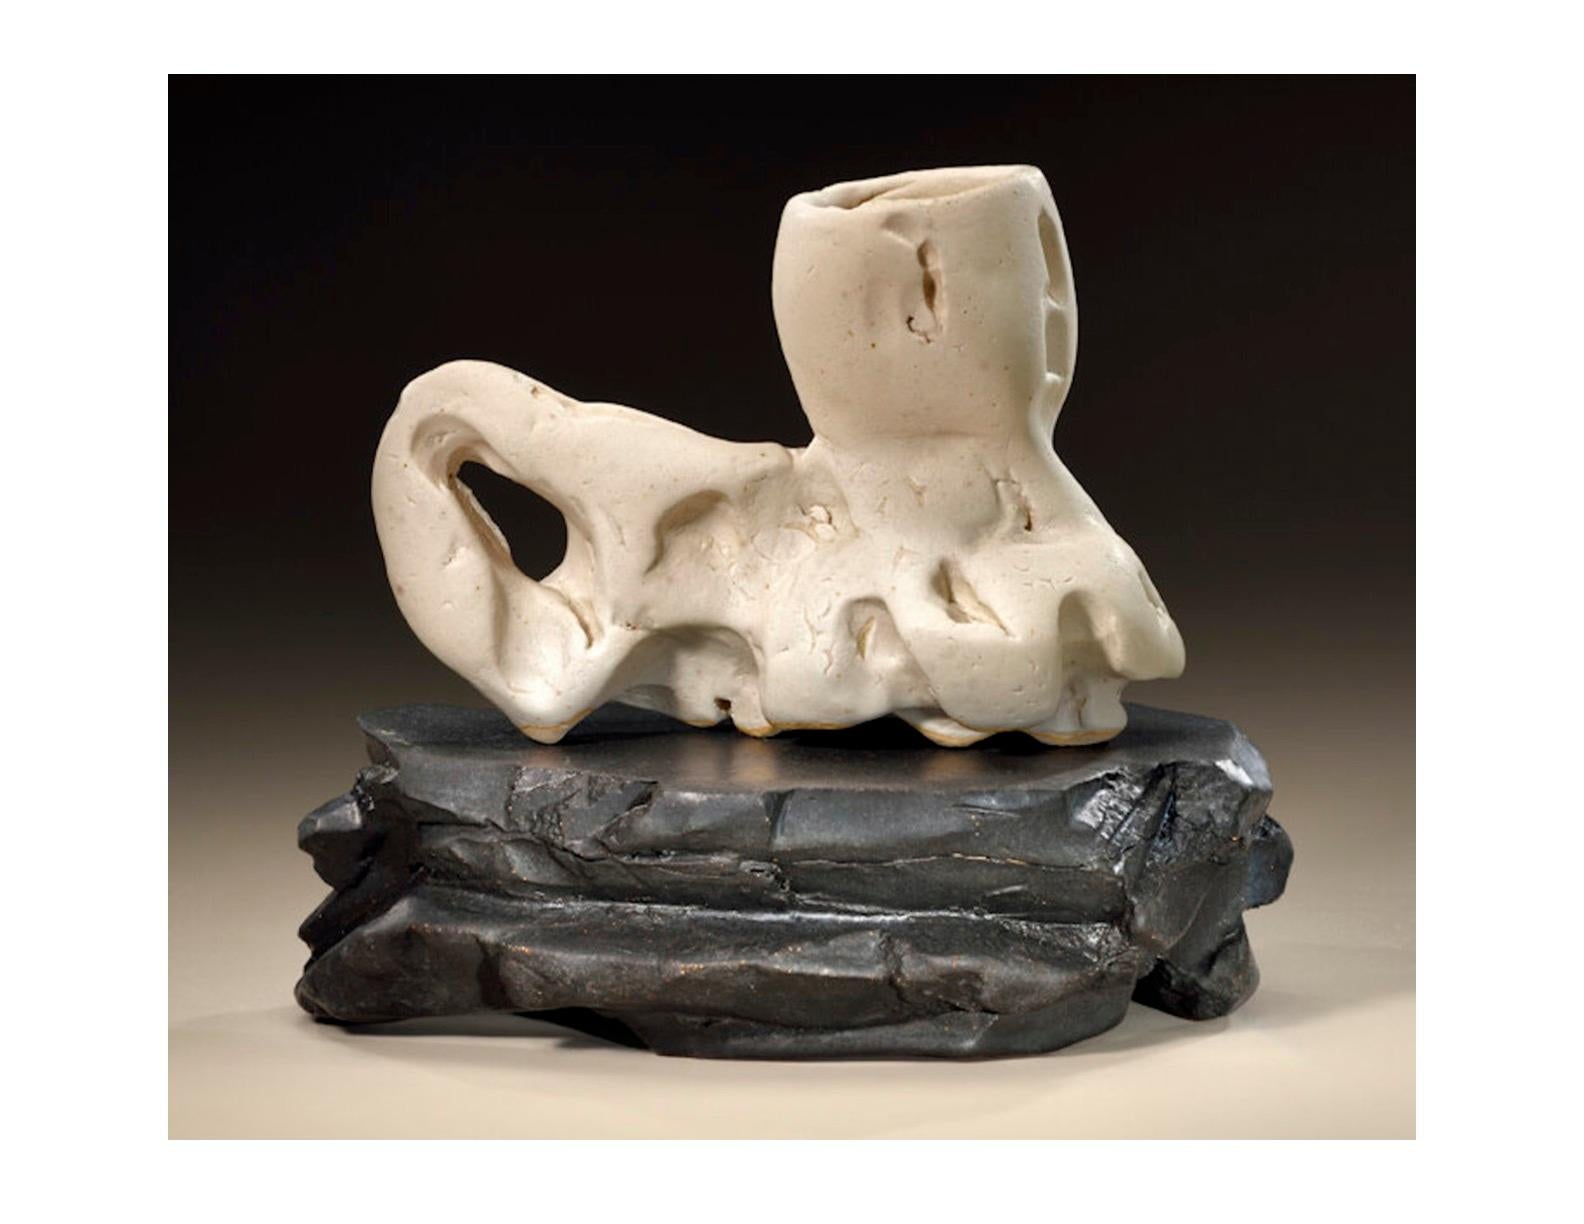 Modern Richard Hirsch Ceramic Scholar Rock Cup Sculpture #25, 2018 For Sale